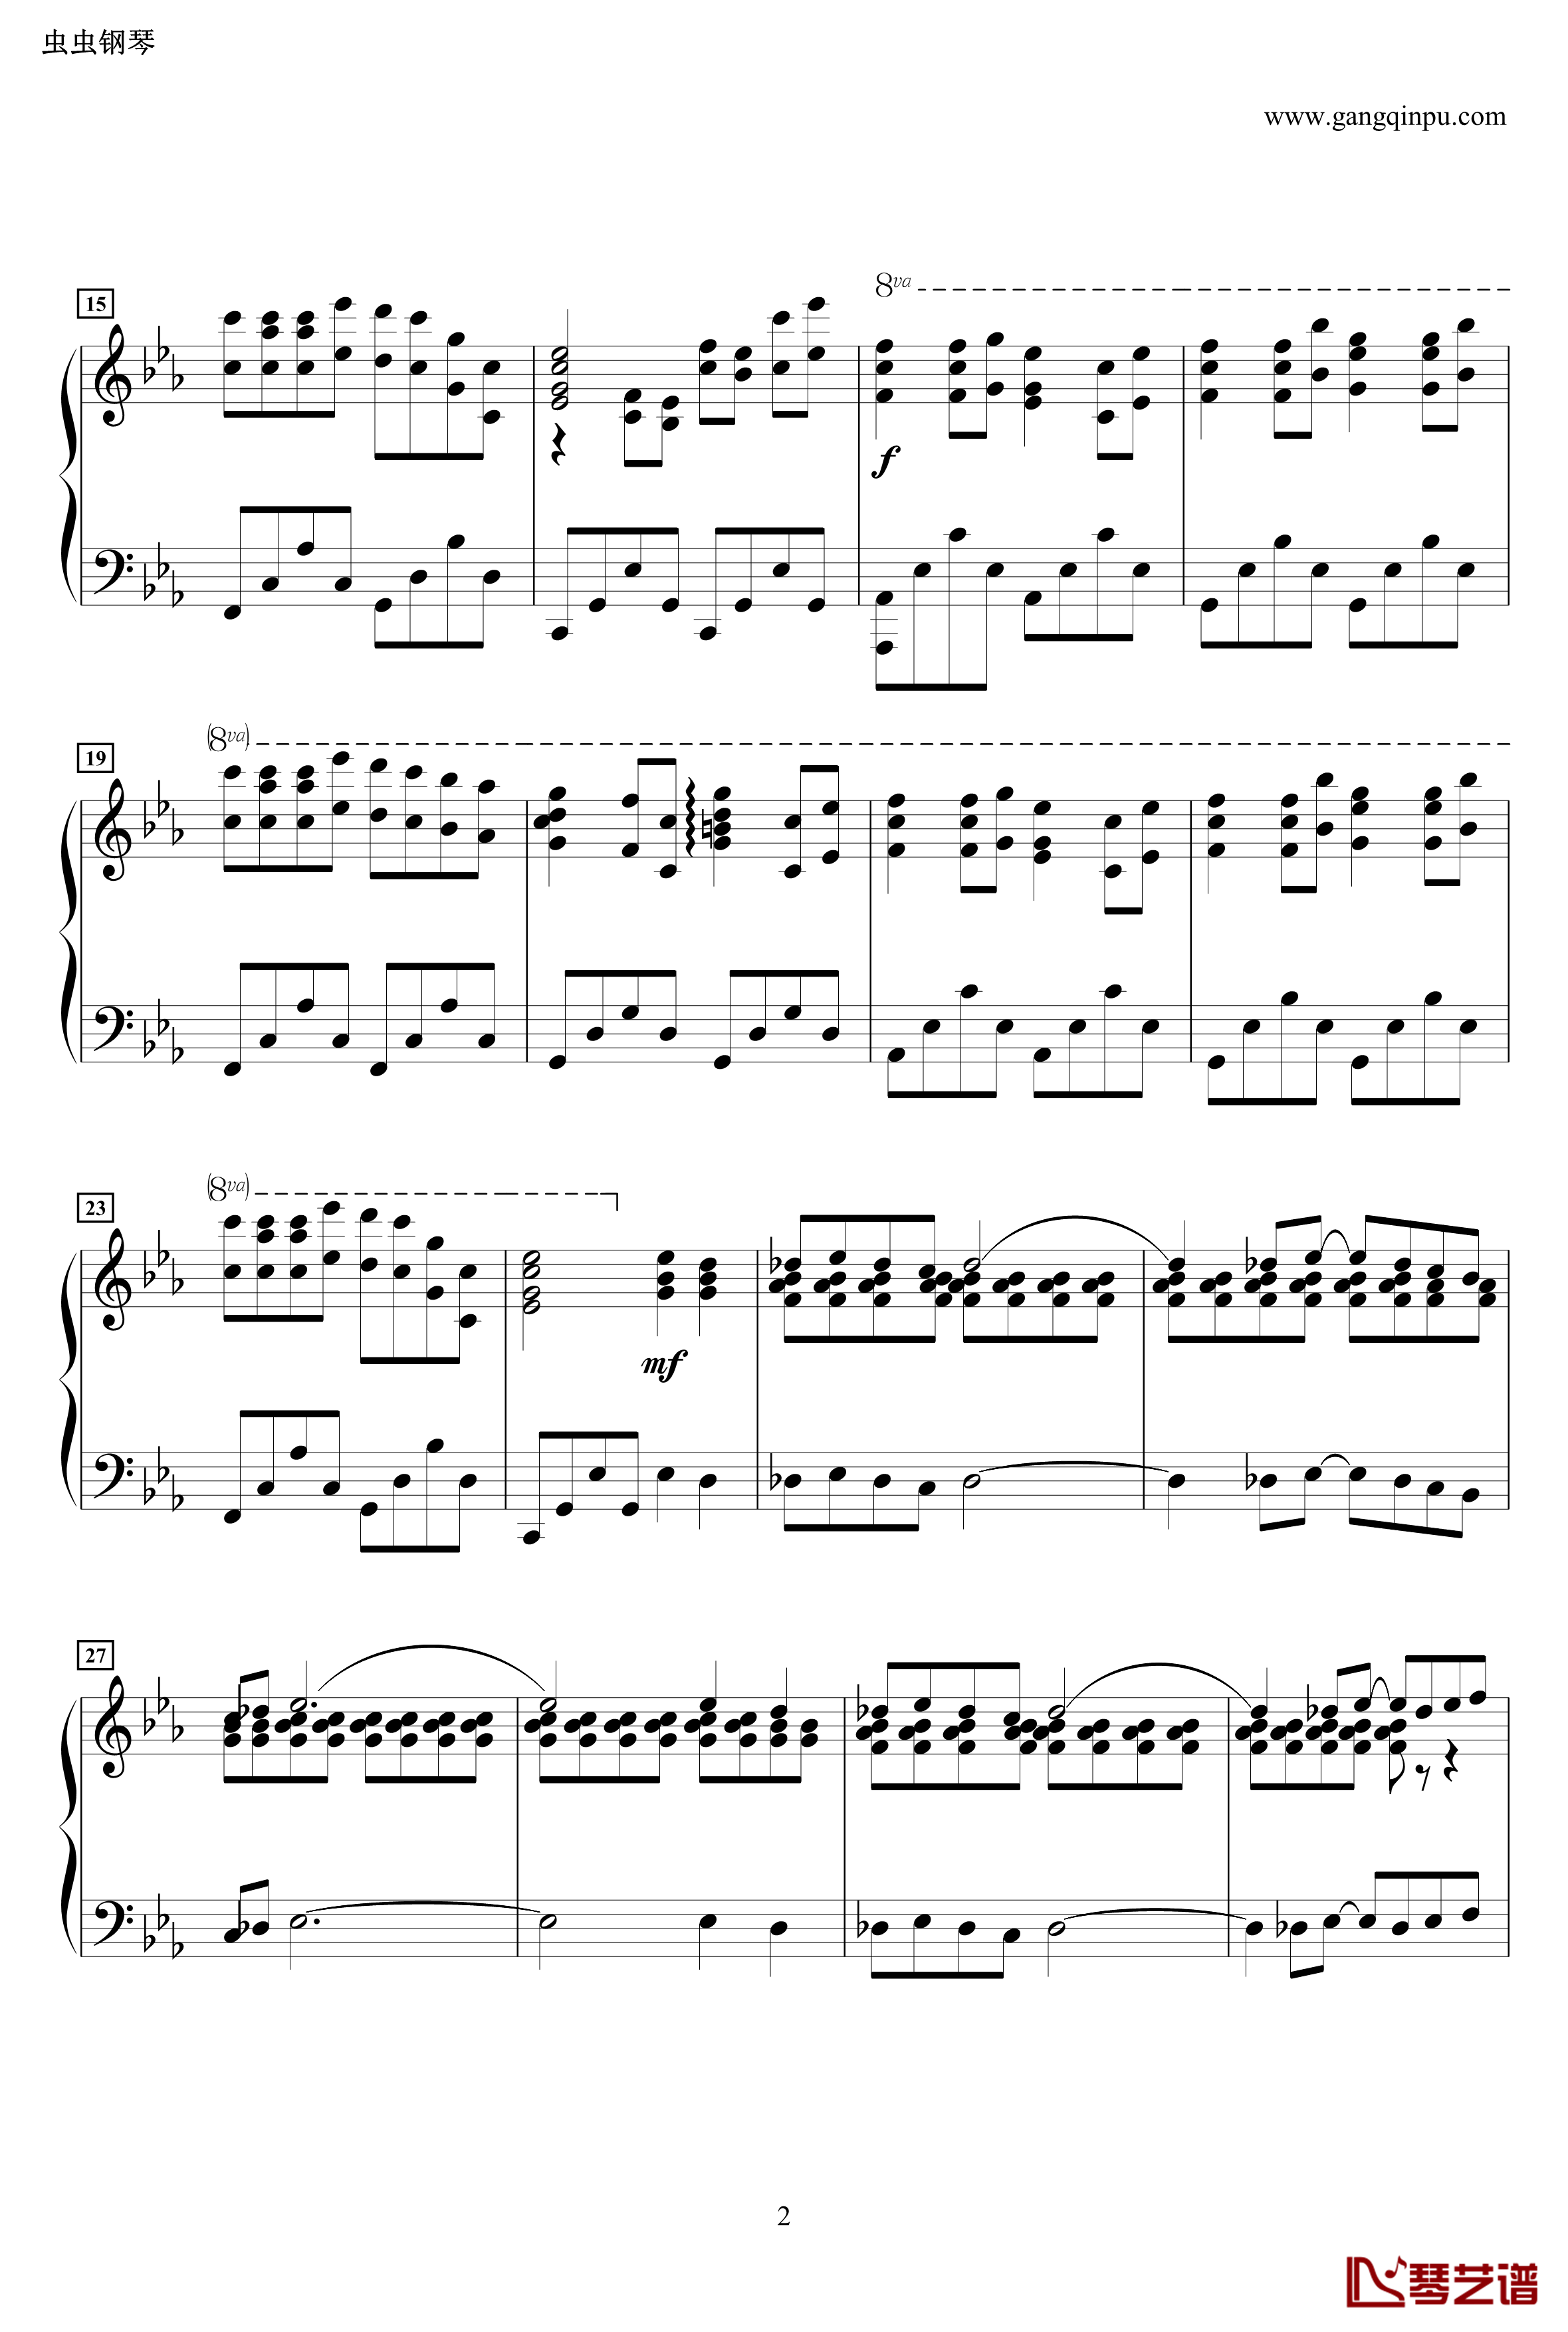 龙猫主题曲钢琴谱-风之甬道·風のとおり道·The Wind Forest·-·Best Original on Piano-久石让2